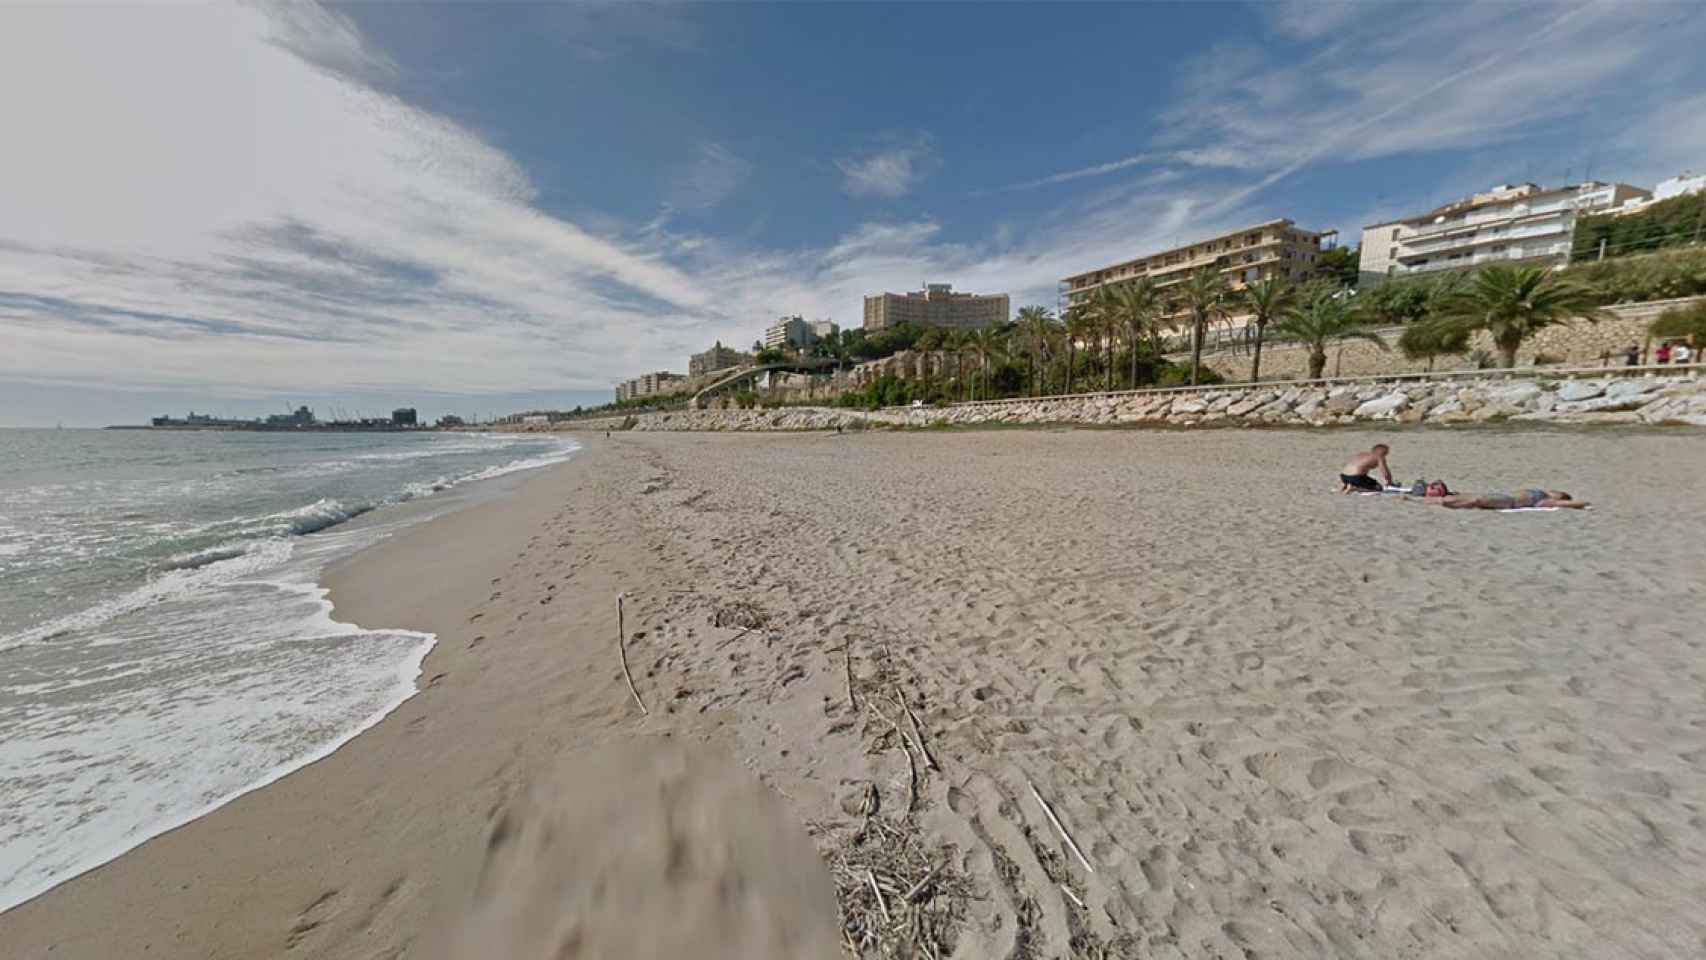 La playa del Miracle de Tarragona, donde ha aparecido el cadáver vestido de un anciano flotando / GOOGLE